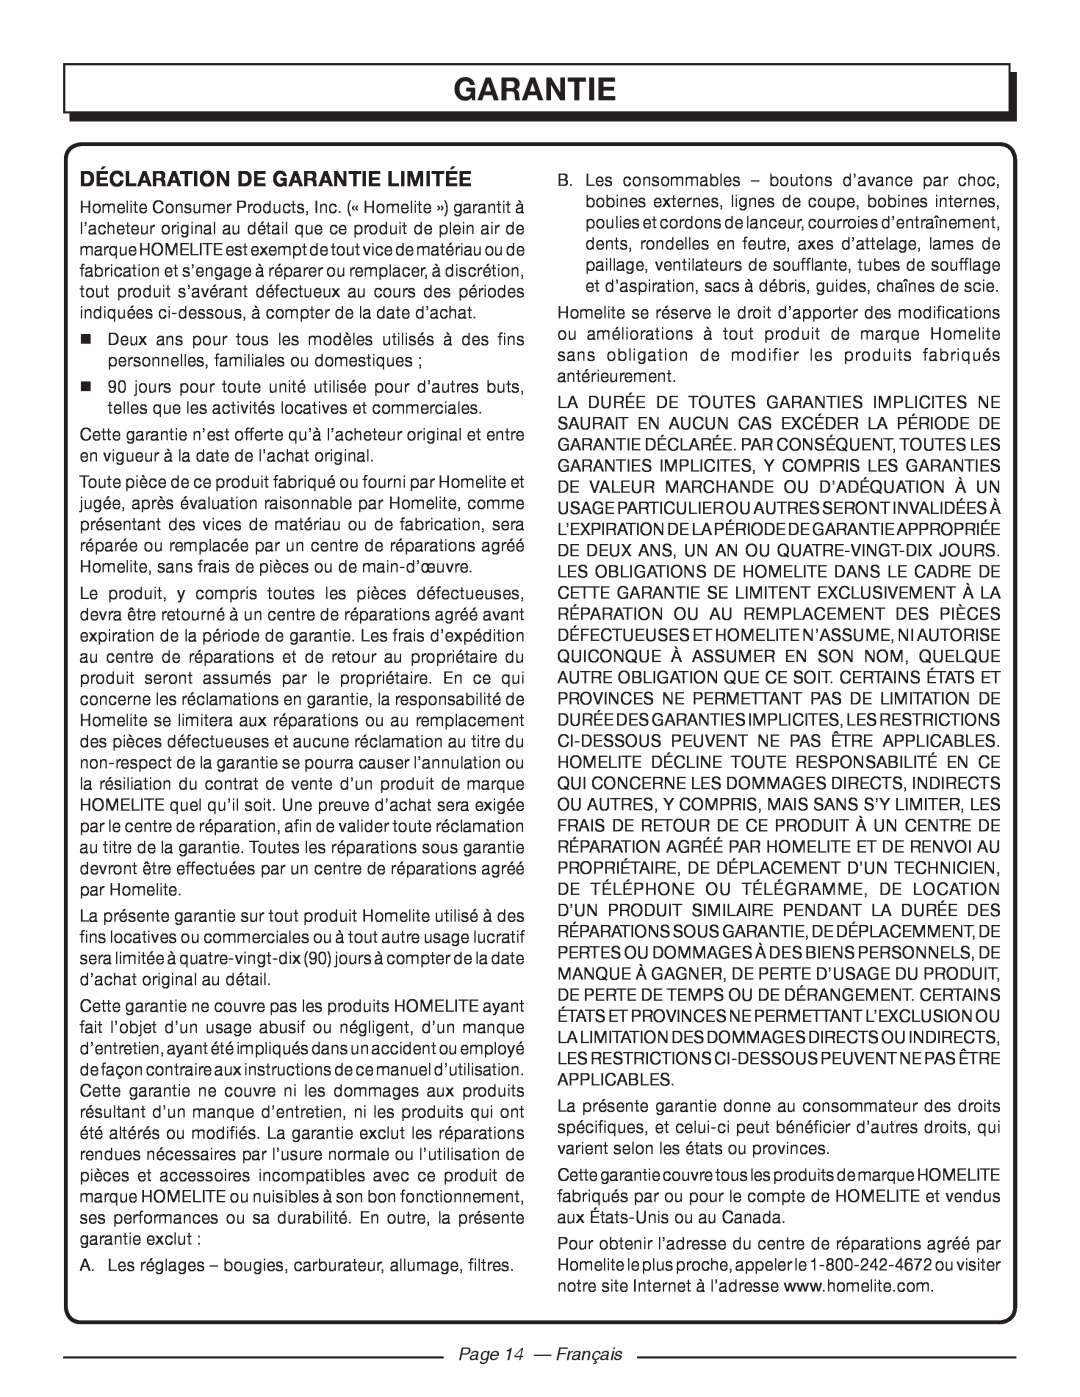 Homelite UT44171 manuel dutilisation Déclaration De Garantie Limitée, Page 14 - Français 